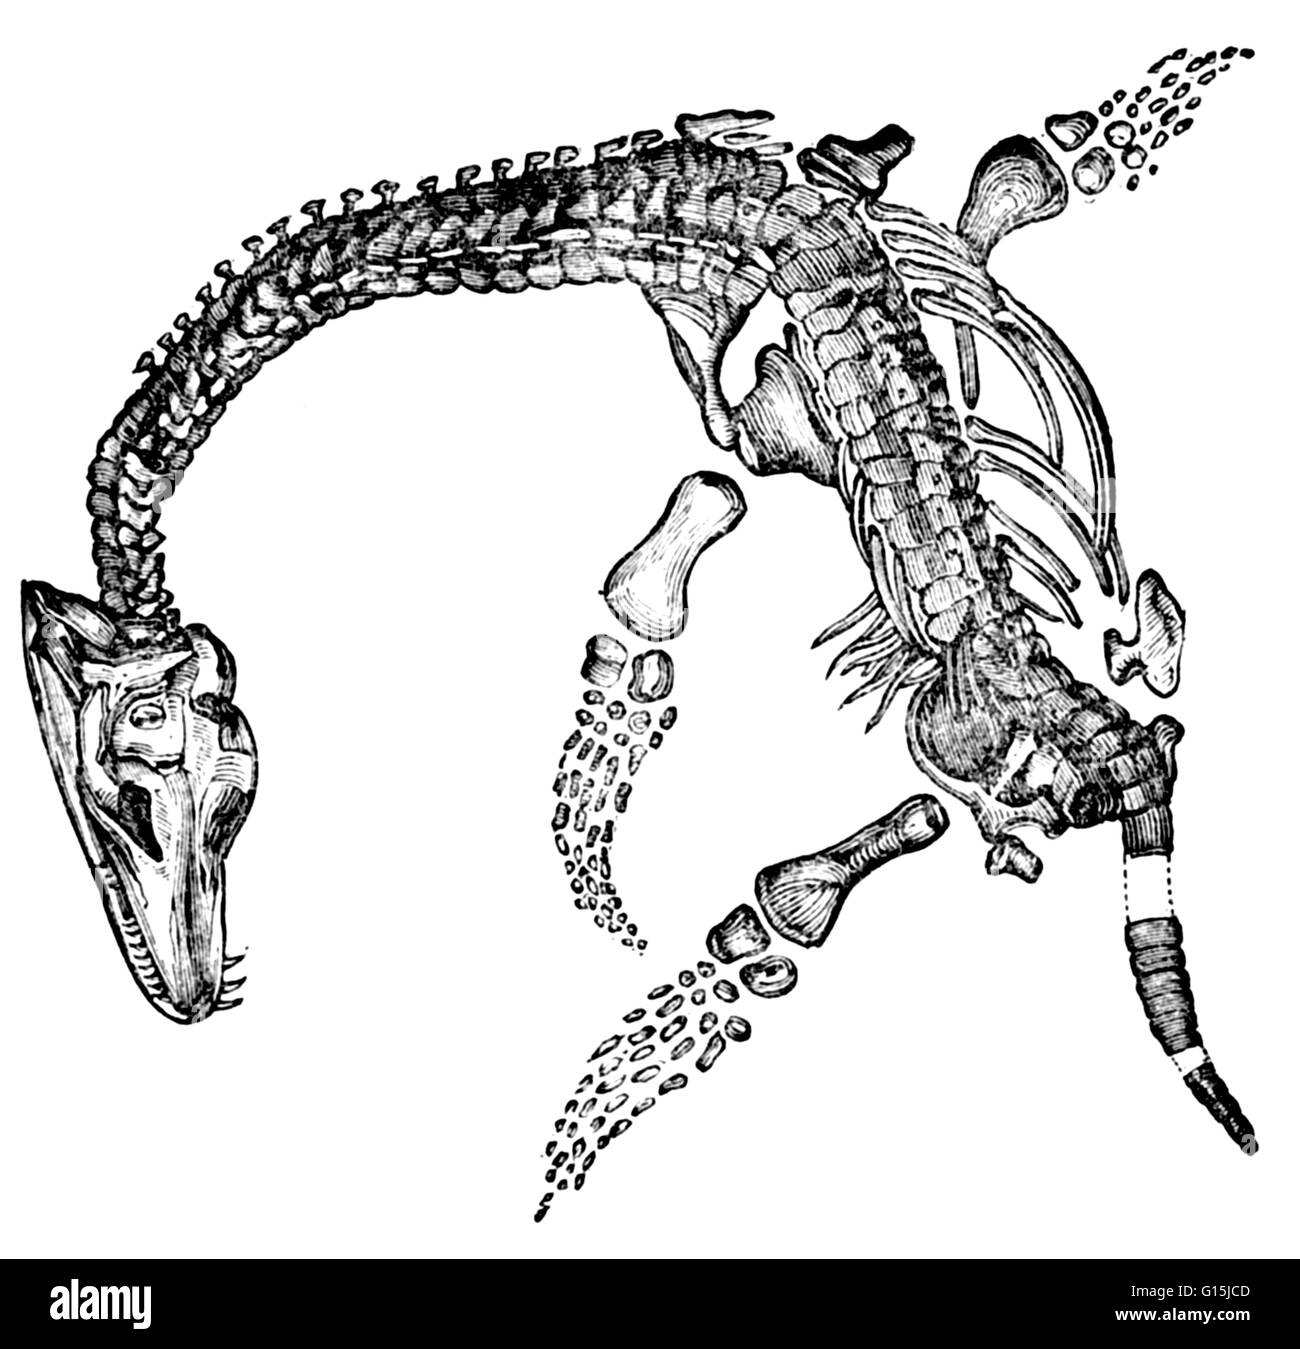 Plesiosaurus sono grandi marino sauropterygian rettili con testa piccola su un collo lungo una coda corta e quattro a paletta arti; del giurassico e cretaceo. Sauropterygia (lucertola pinne) sono un gruppo di grande successo RETTILI ACQUATICI che flouris Foto Stock